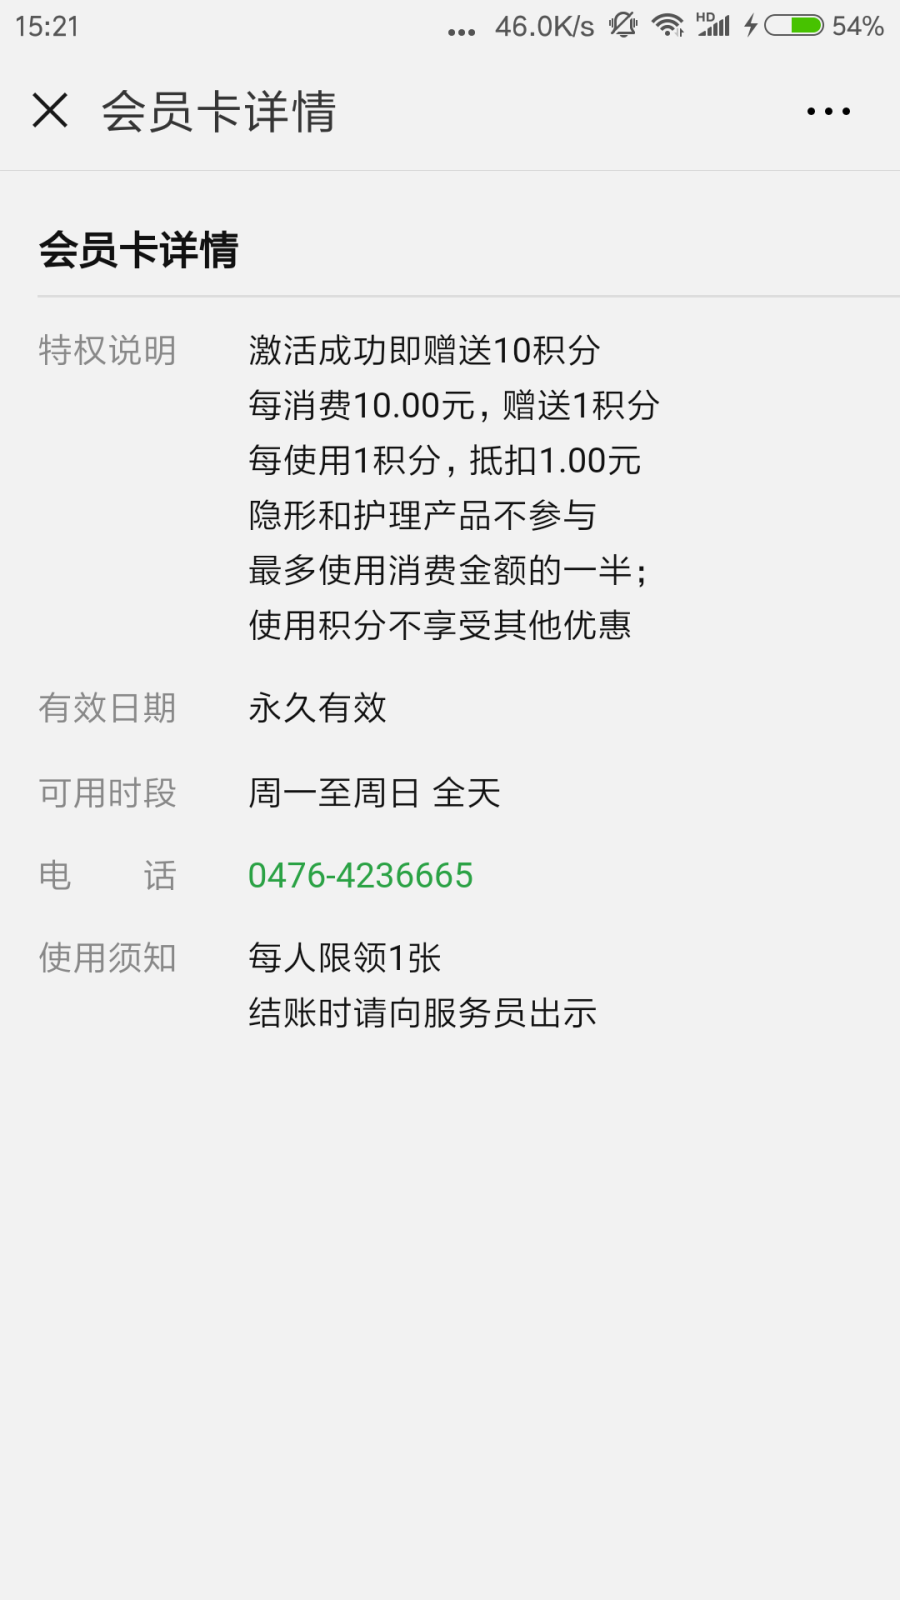 Screenshot_2018-08-27-15-21-45-951_com.tencent.mm.png